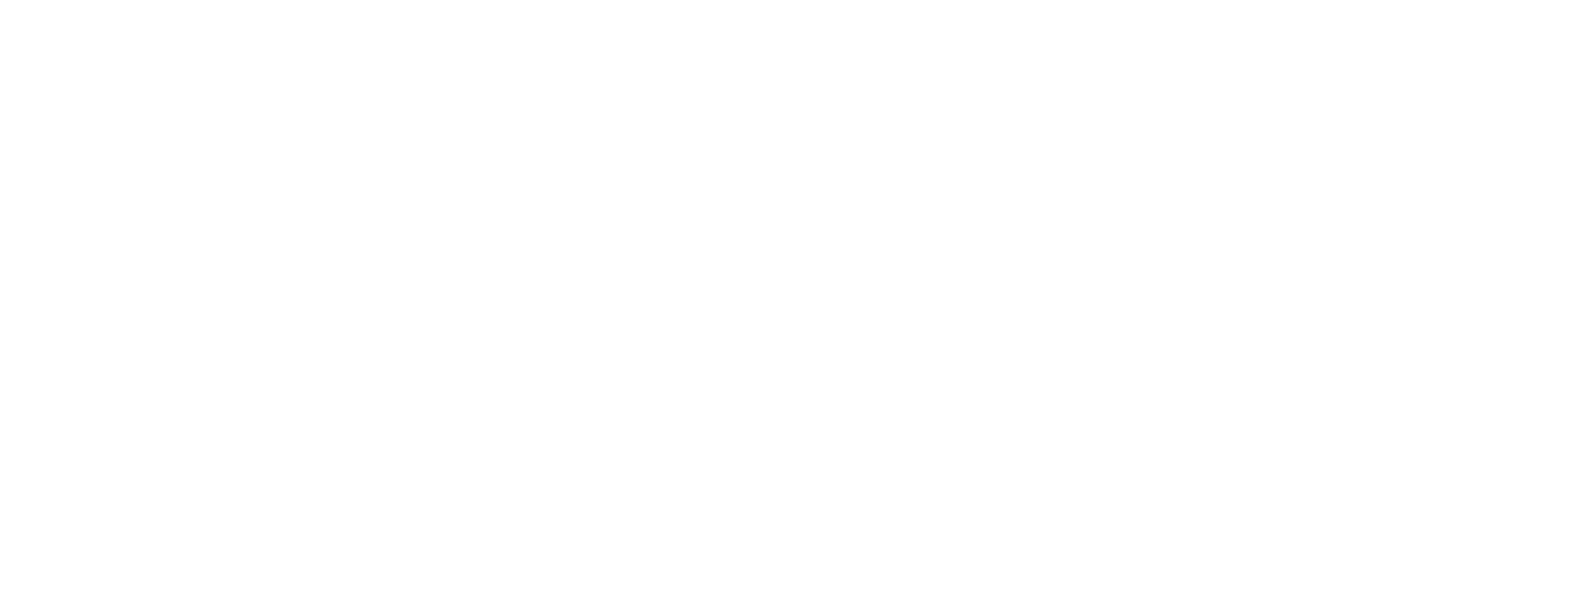 Bumrungrad Hospital logo large for dark backgrounds (transparent PNG)